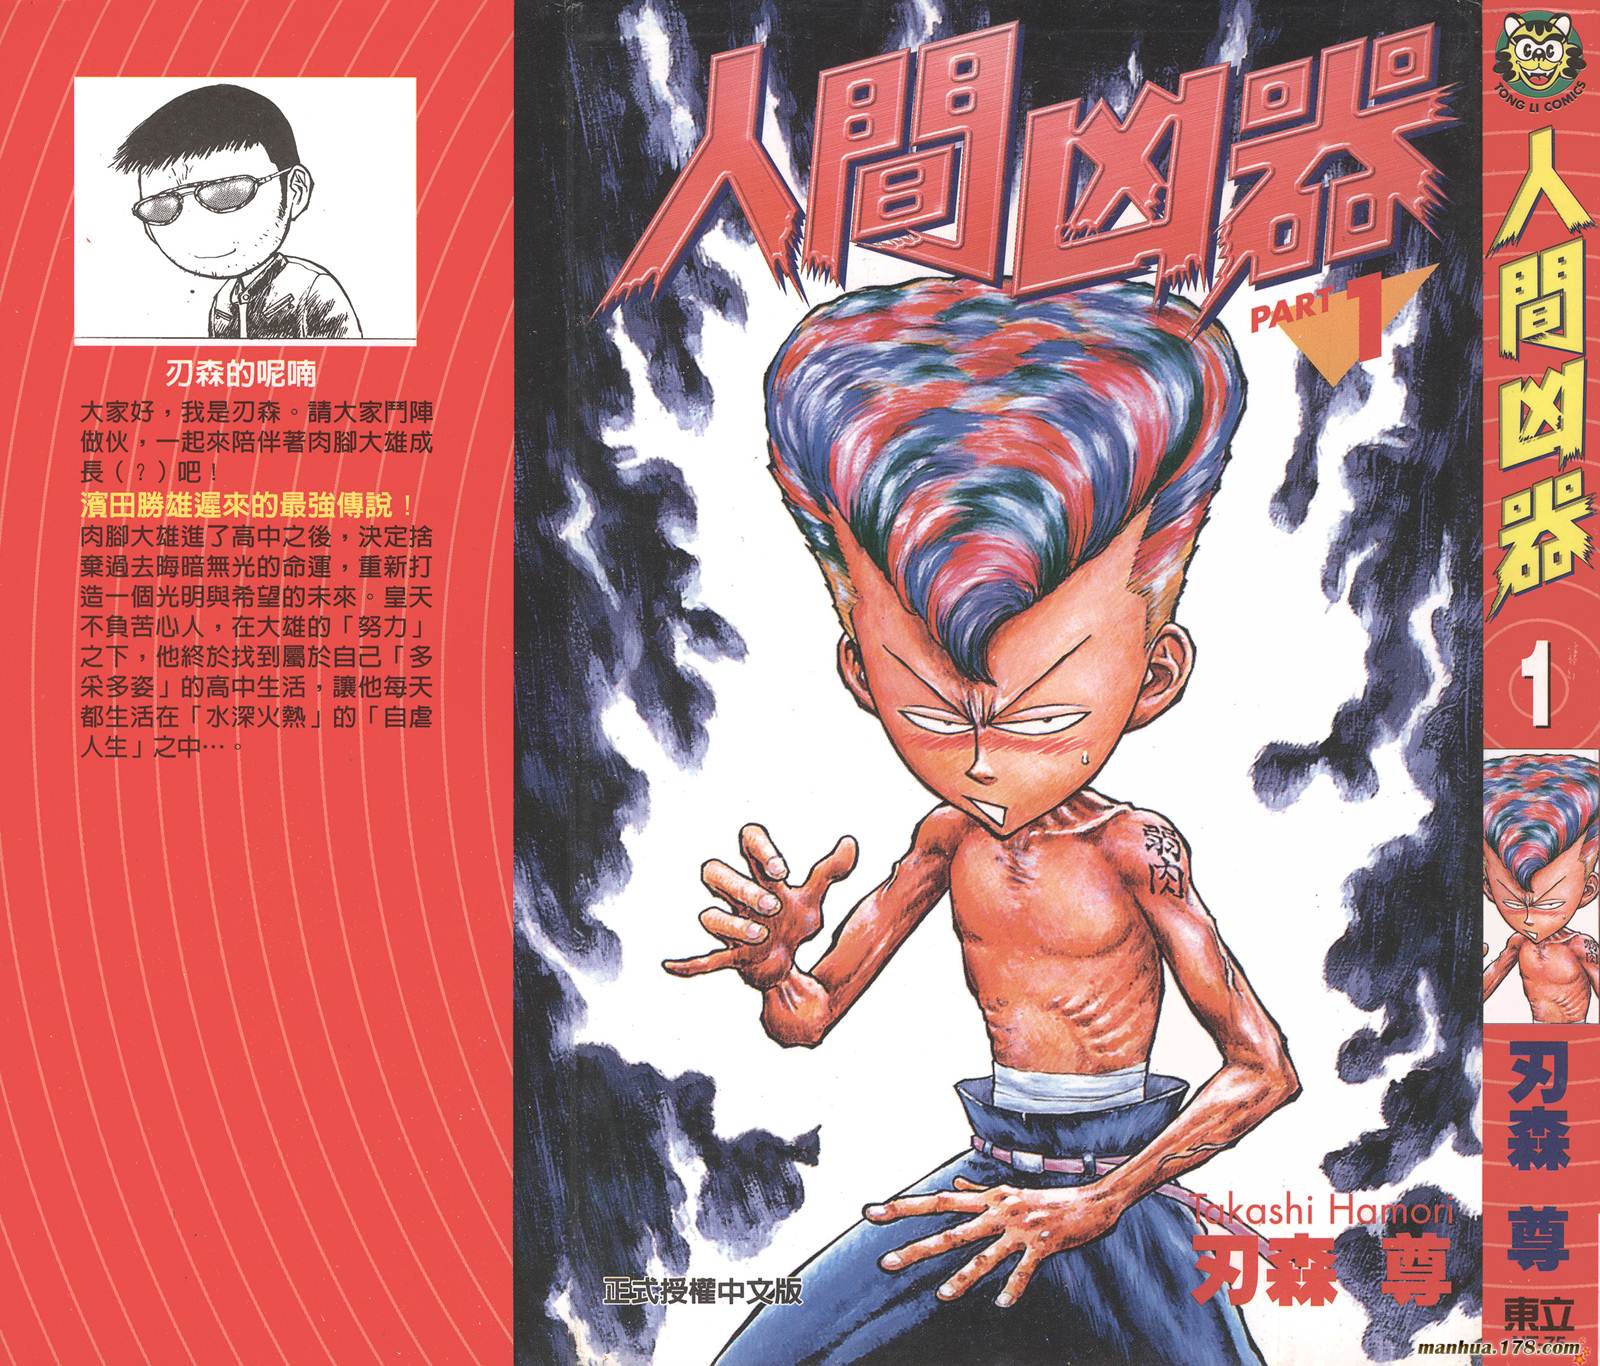 人間兇器【第01卷】 漫畫線上看- 動漫戲說(ACGN.cc)